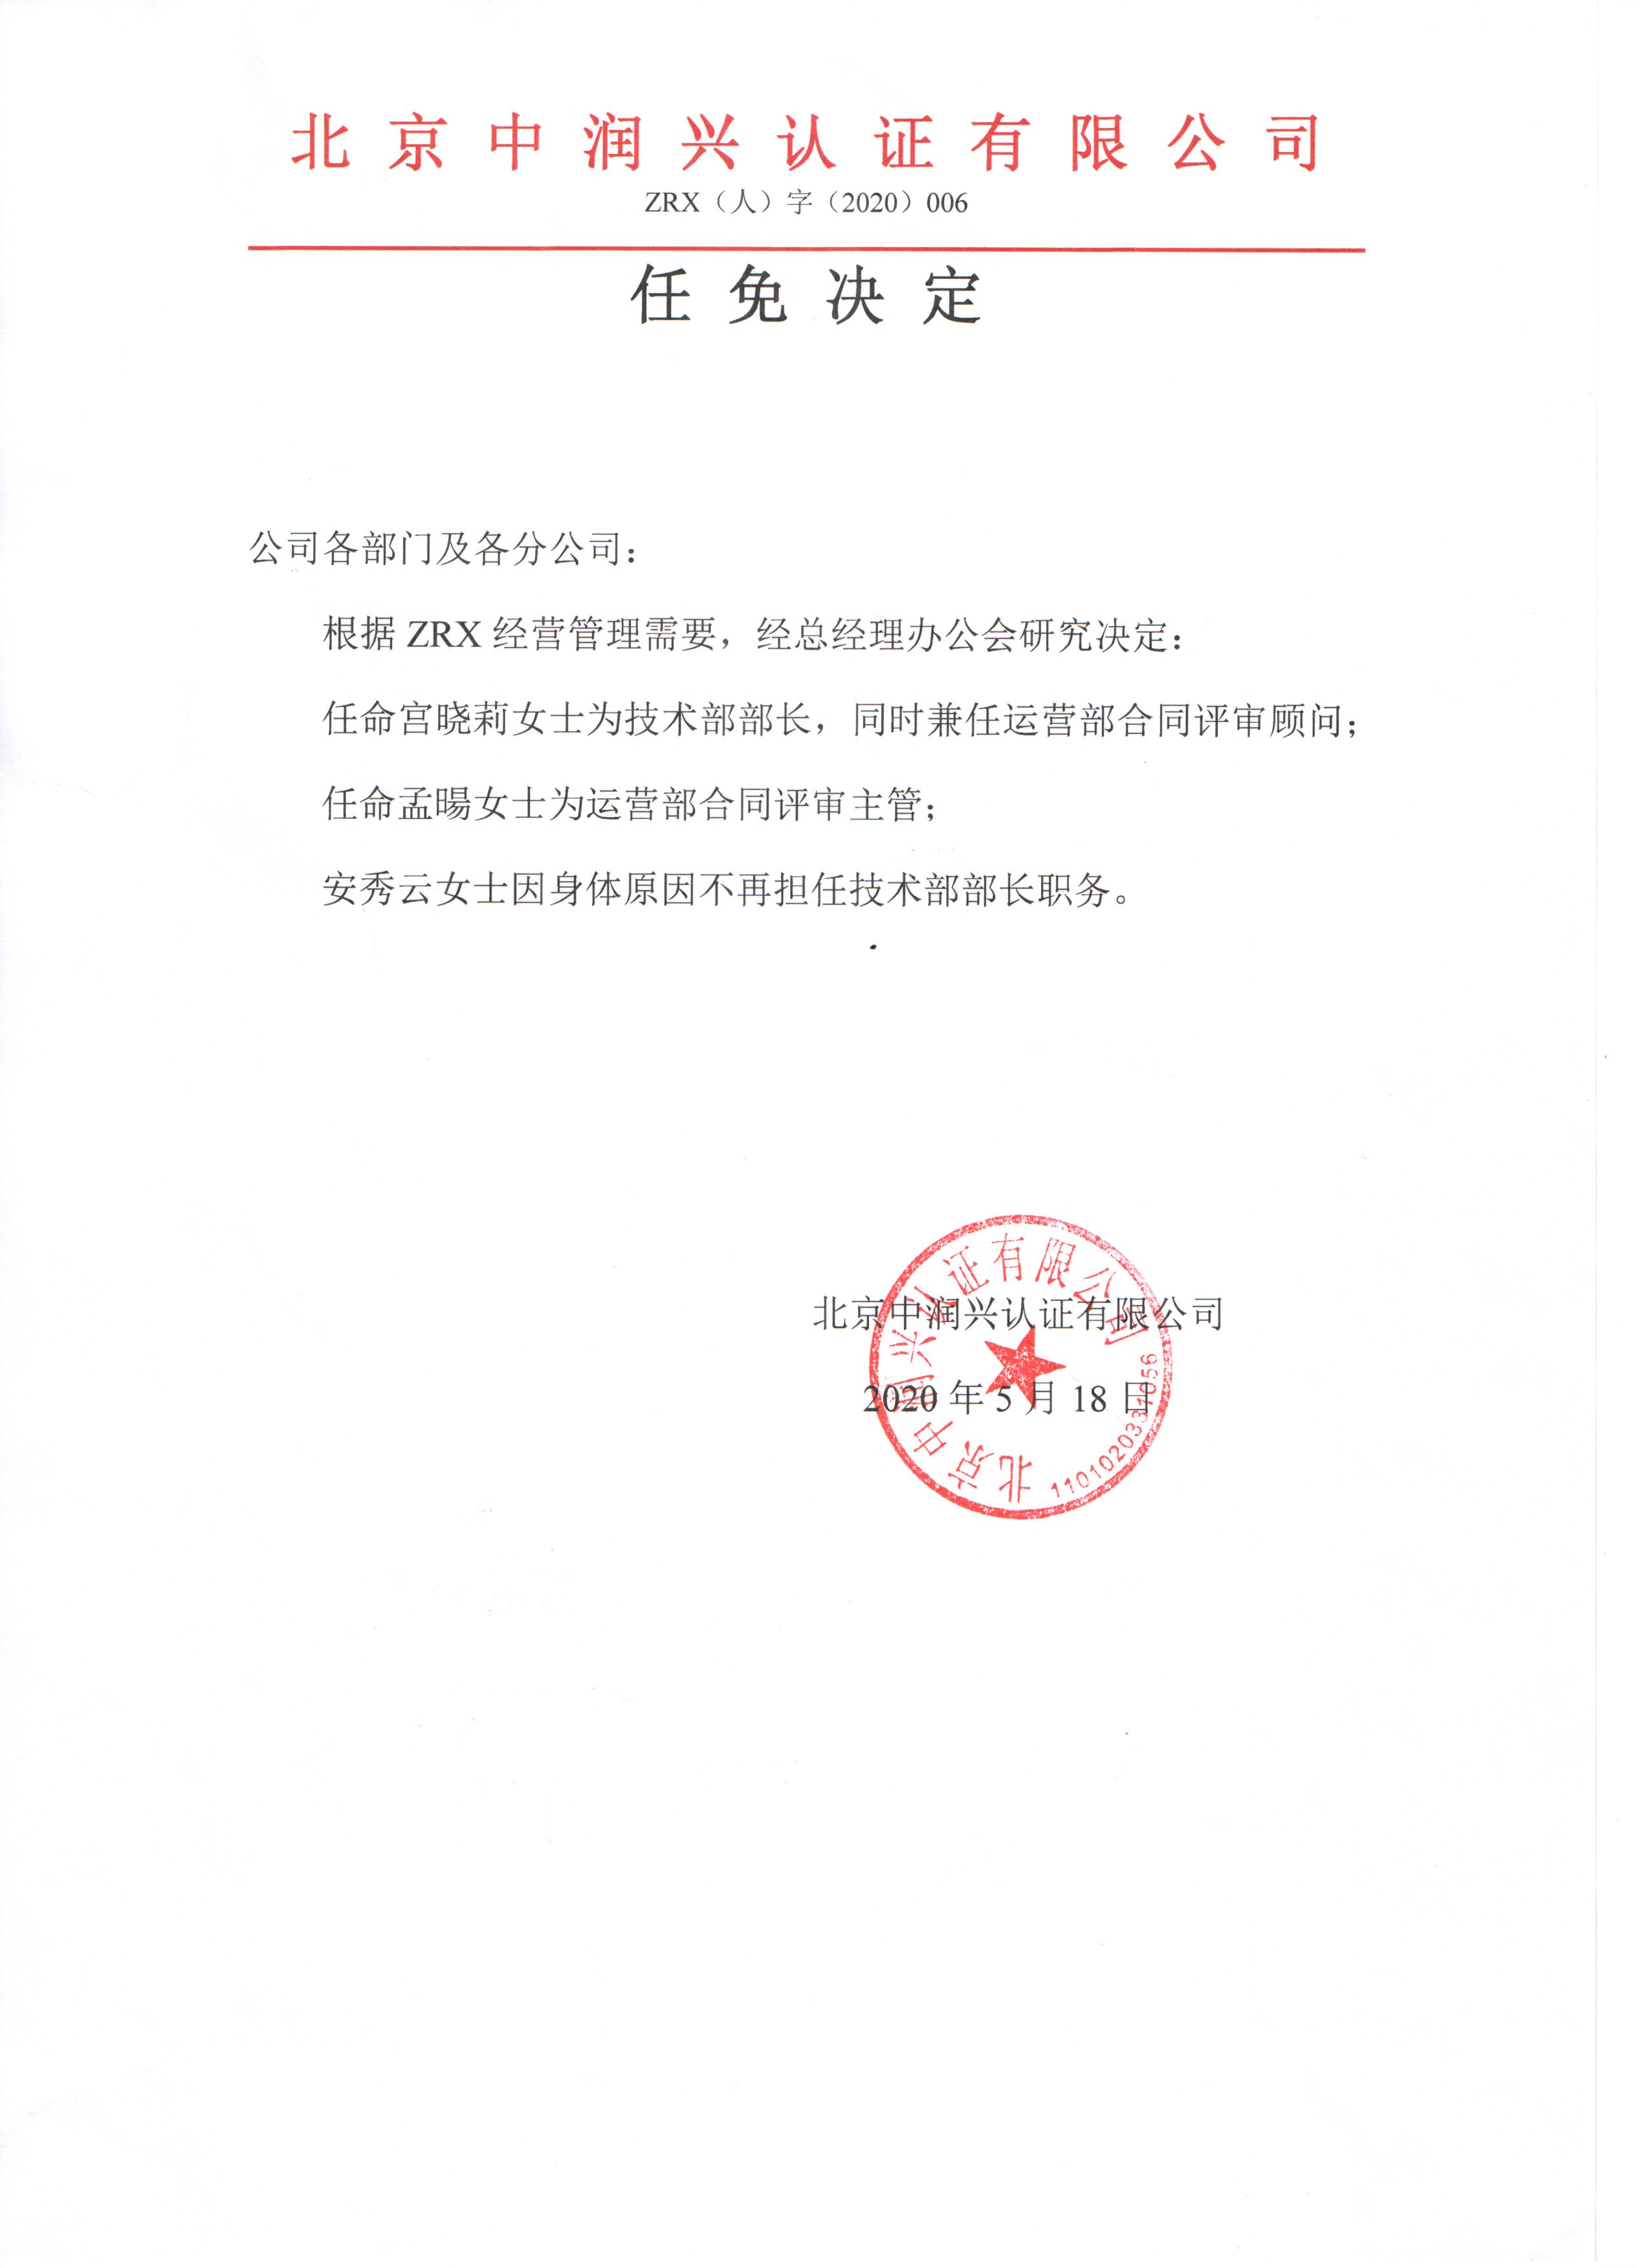 北京市人民代表大会常务委员会决定任免名单_凤凰网视频_凤凰网